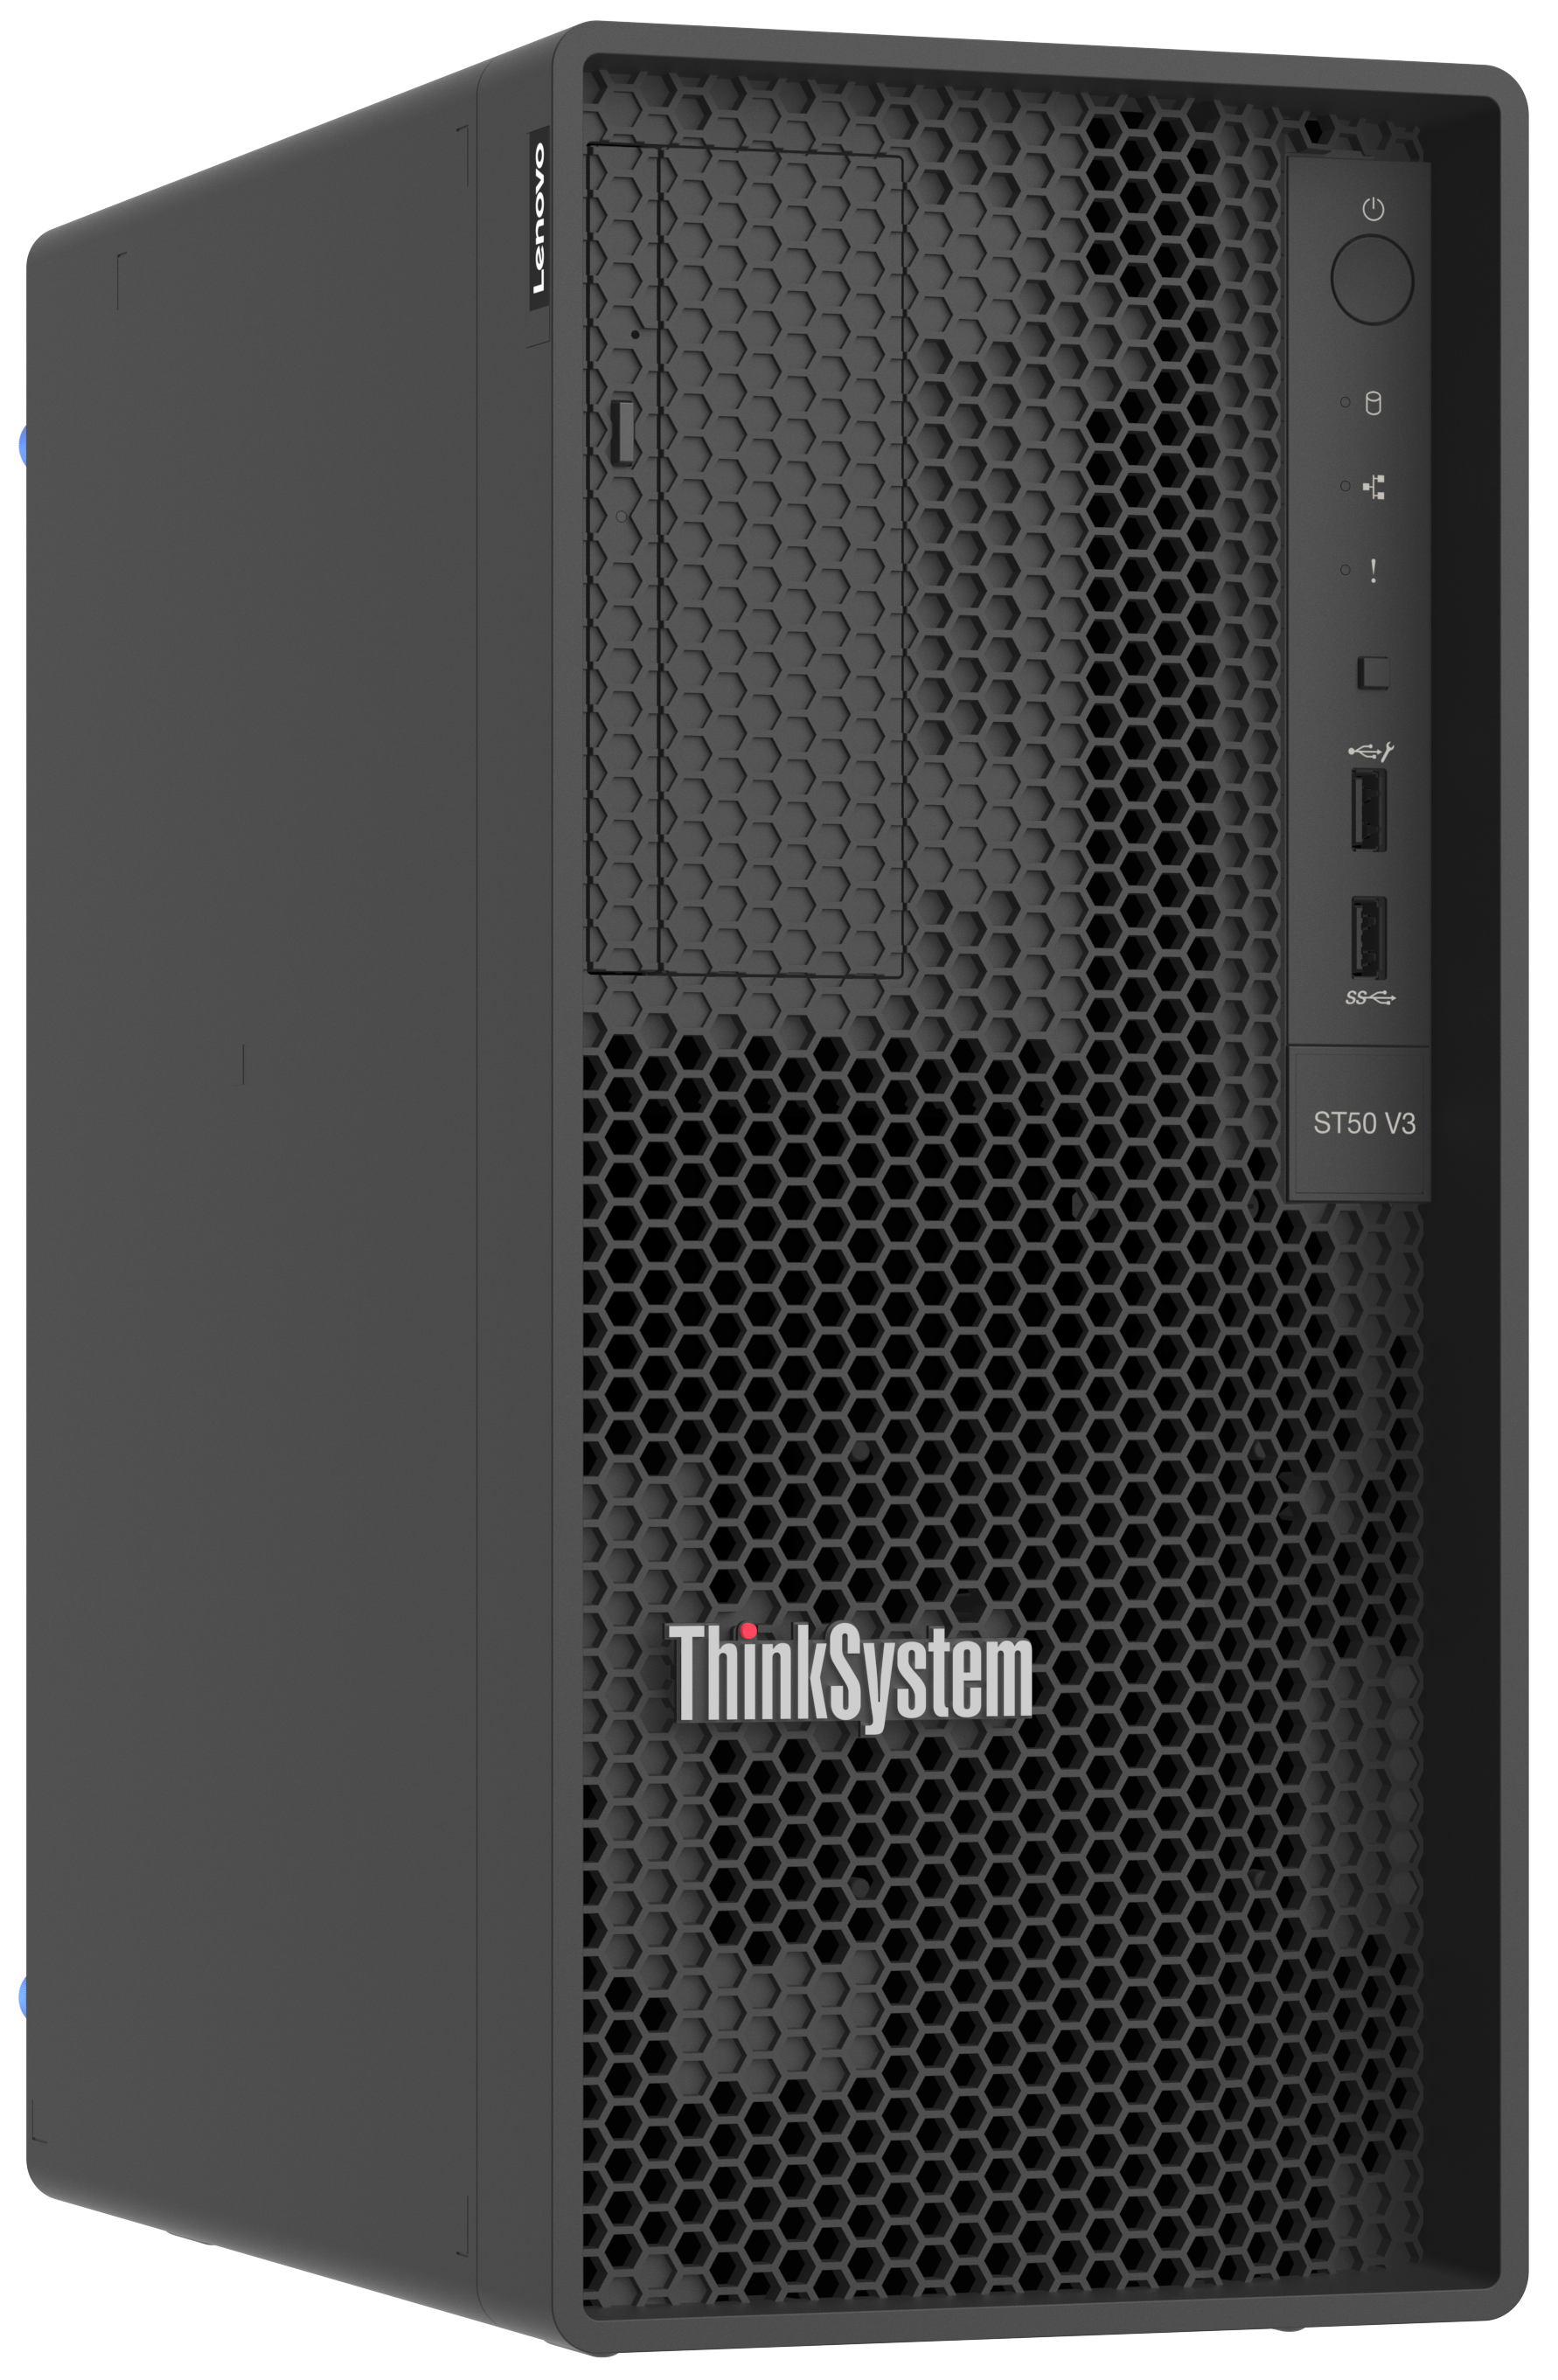 ThinkSystem ST50 V3 front view